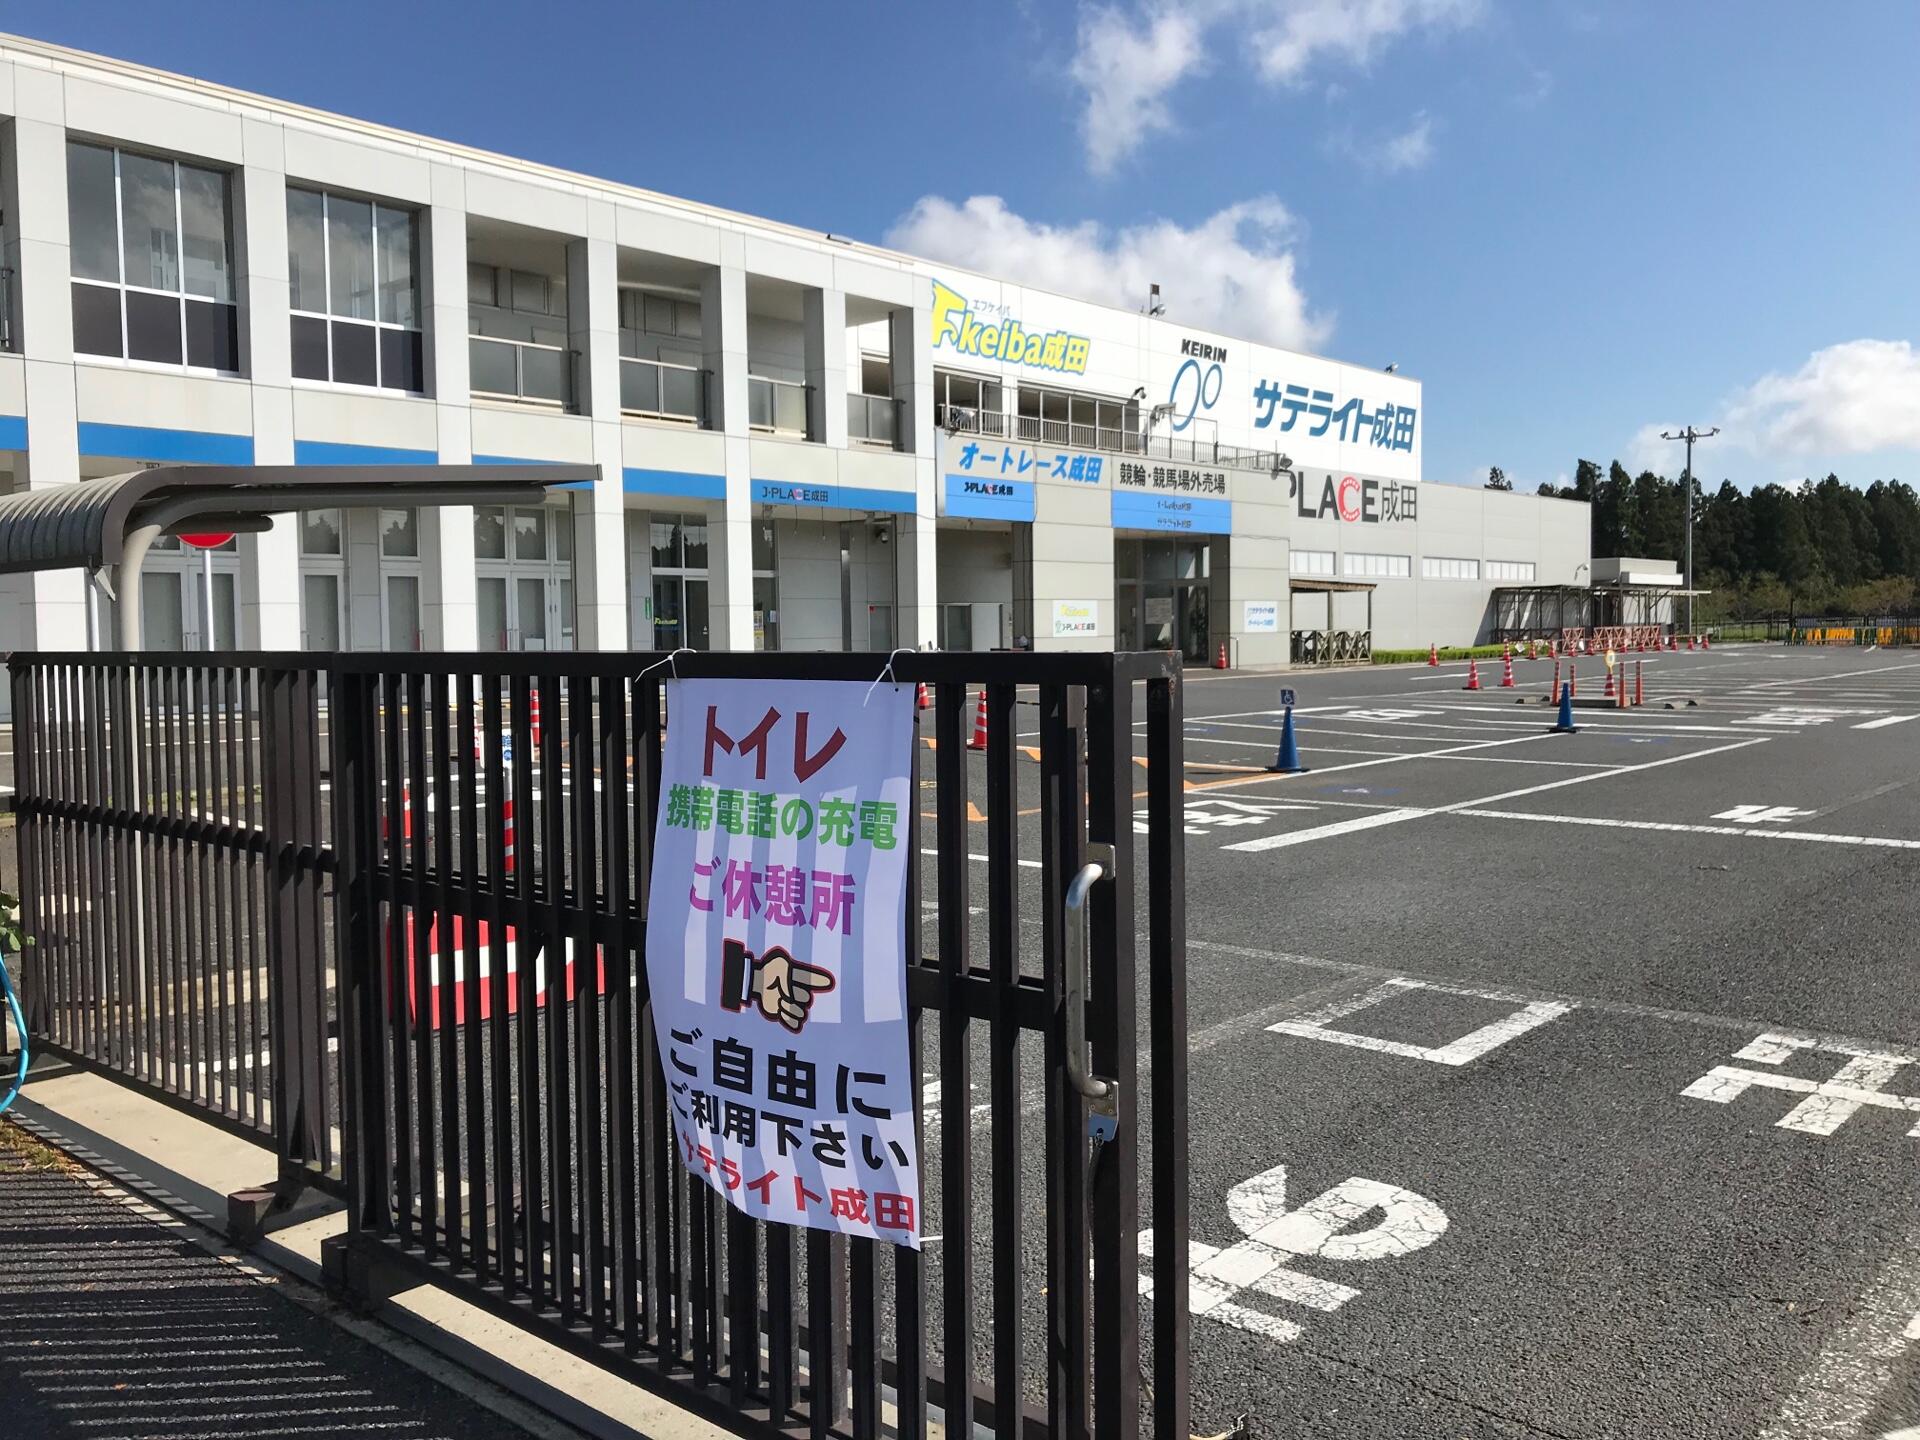 9 18 水 よりar成田のオートレース発売再開と災害支援施設として一部施設開放について ニュース オートレースオフィシャルサイト